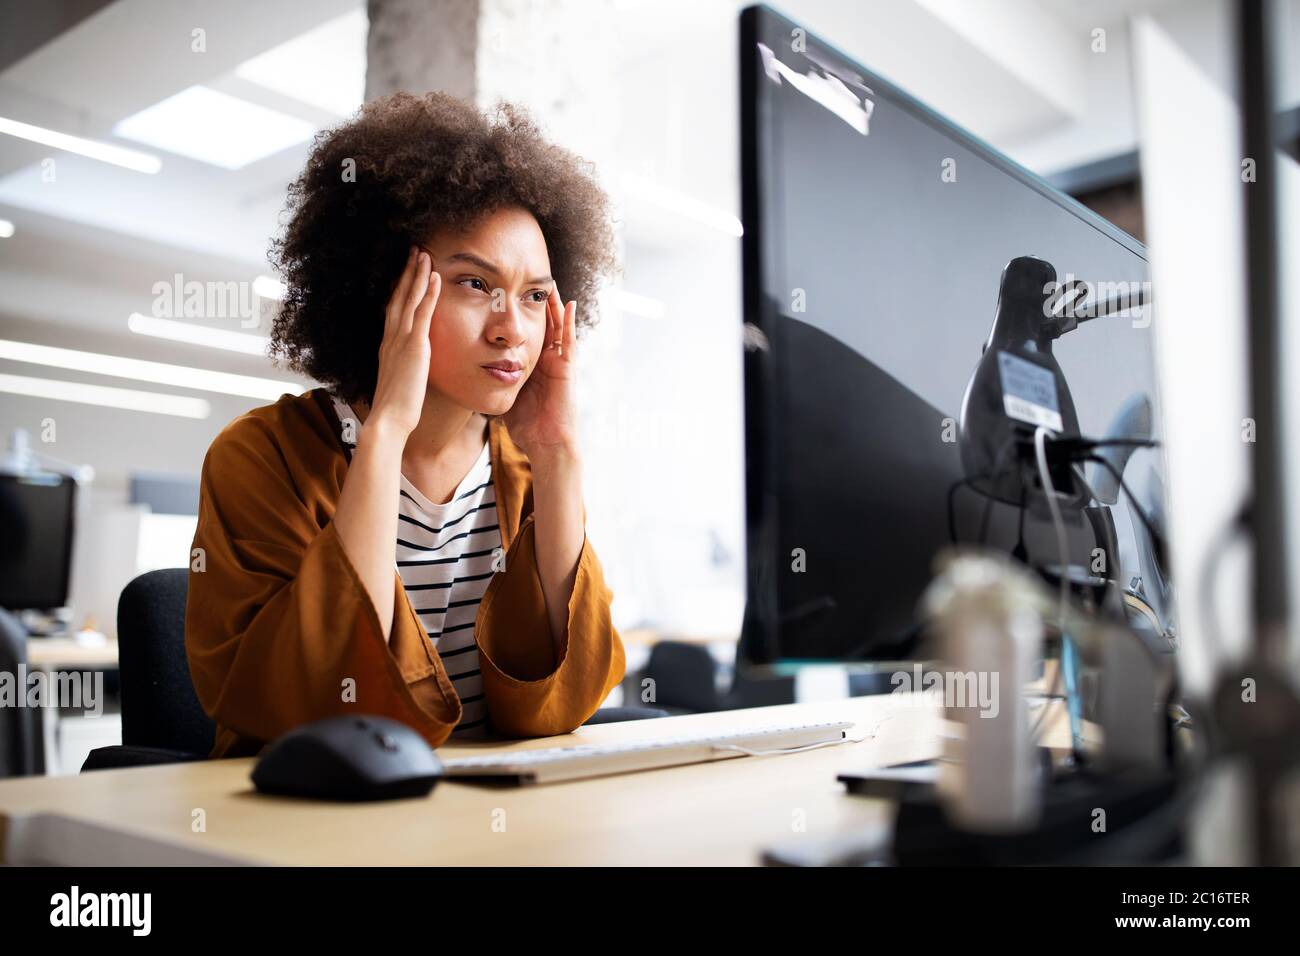 Überarbeitet und frustrierte junge Frau vor der Computer im Büro Stockfoto